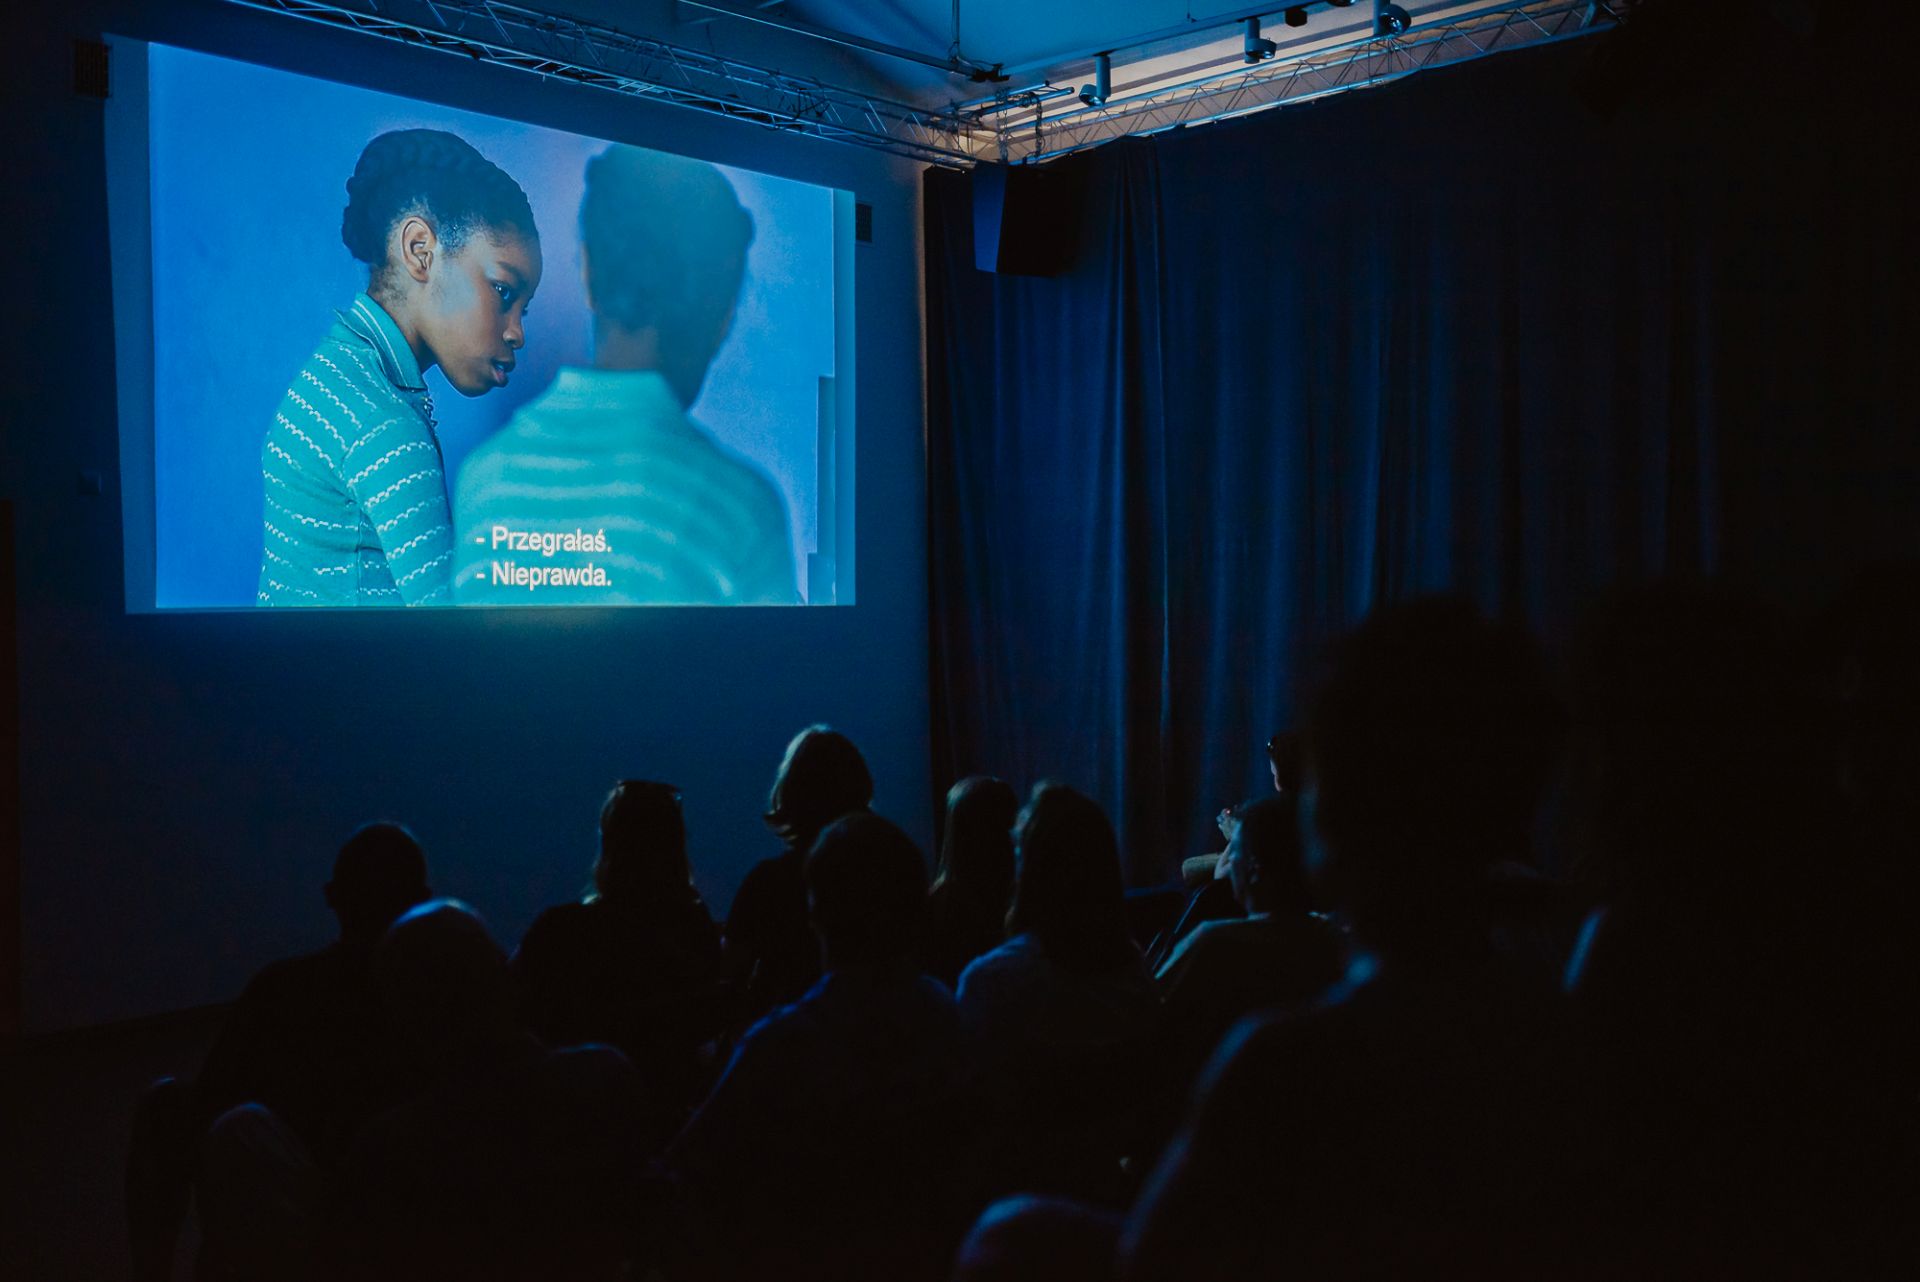 Ludzie siedzą na krzesłach w sali widowiskowej i oglądają film wyświetlany na ścianie.